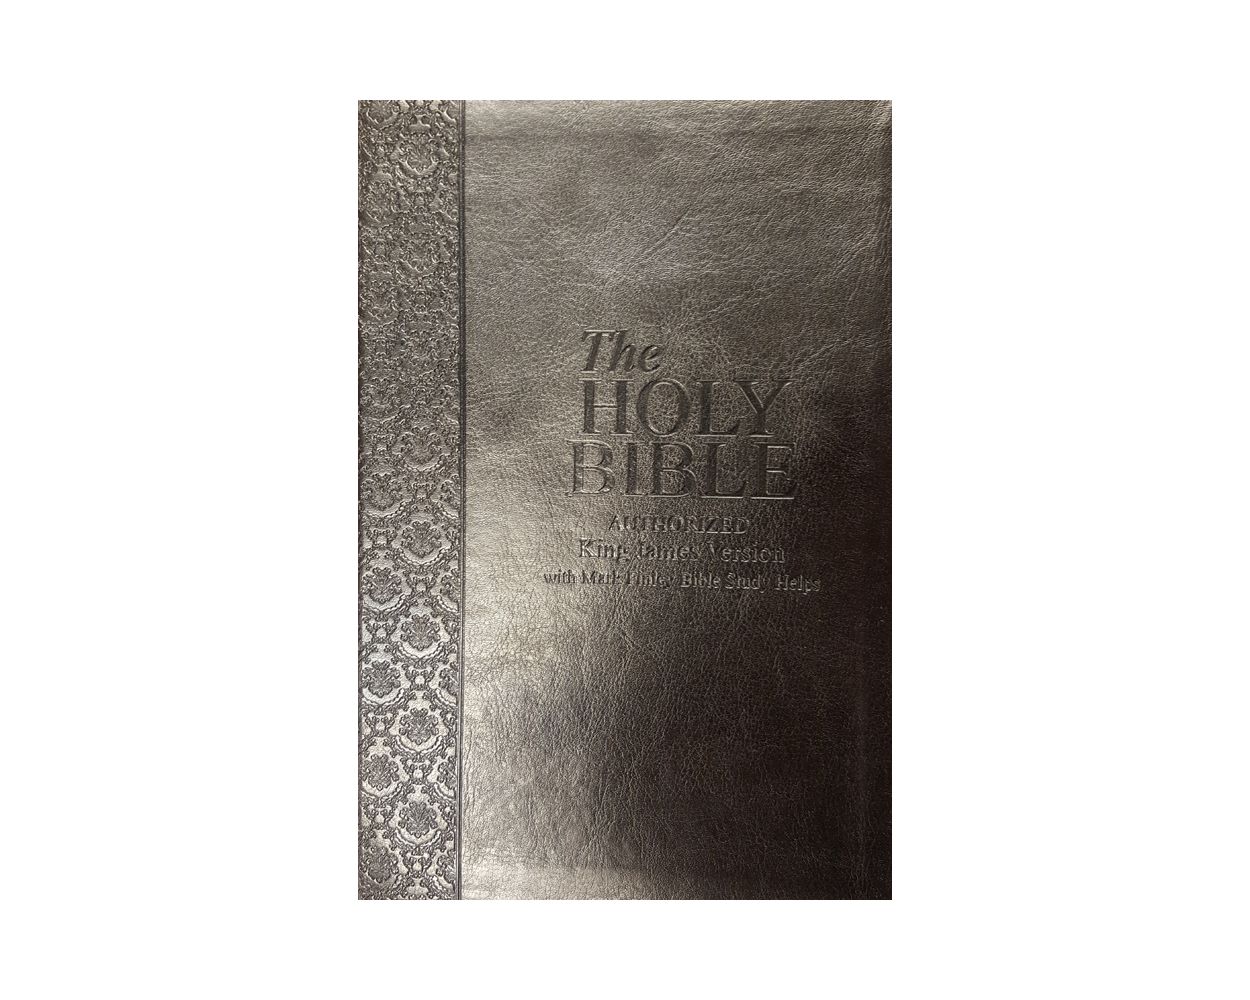 Family Bible King James Preta - Bíblia da Familia em inglês - Novo